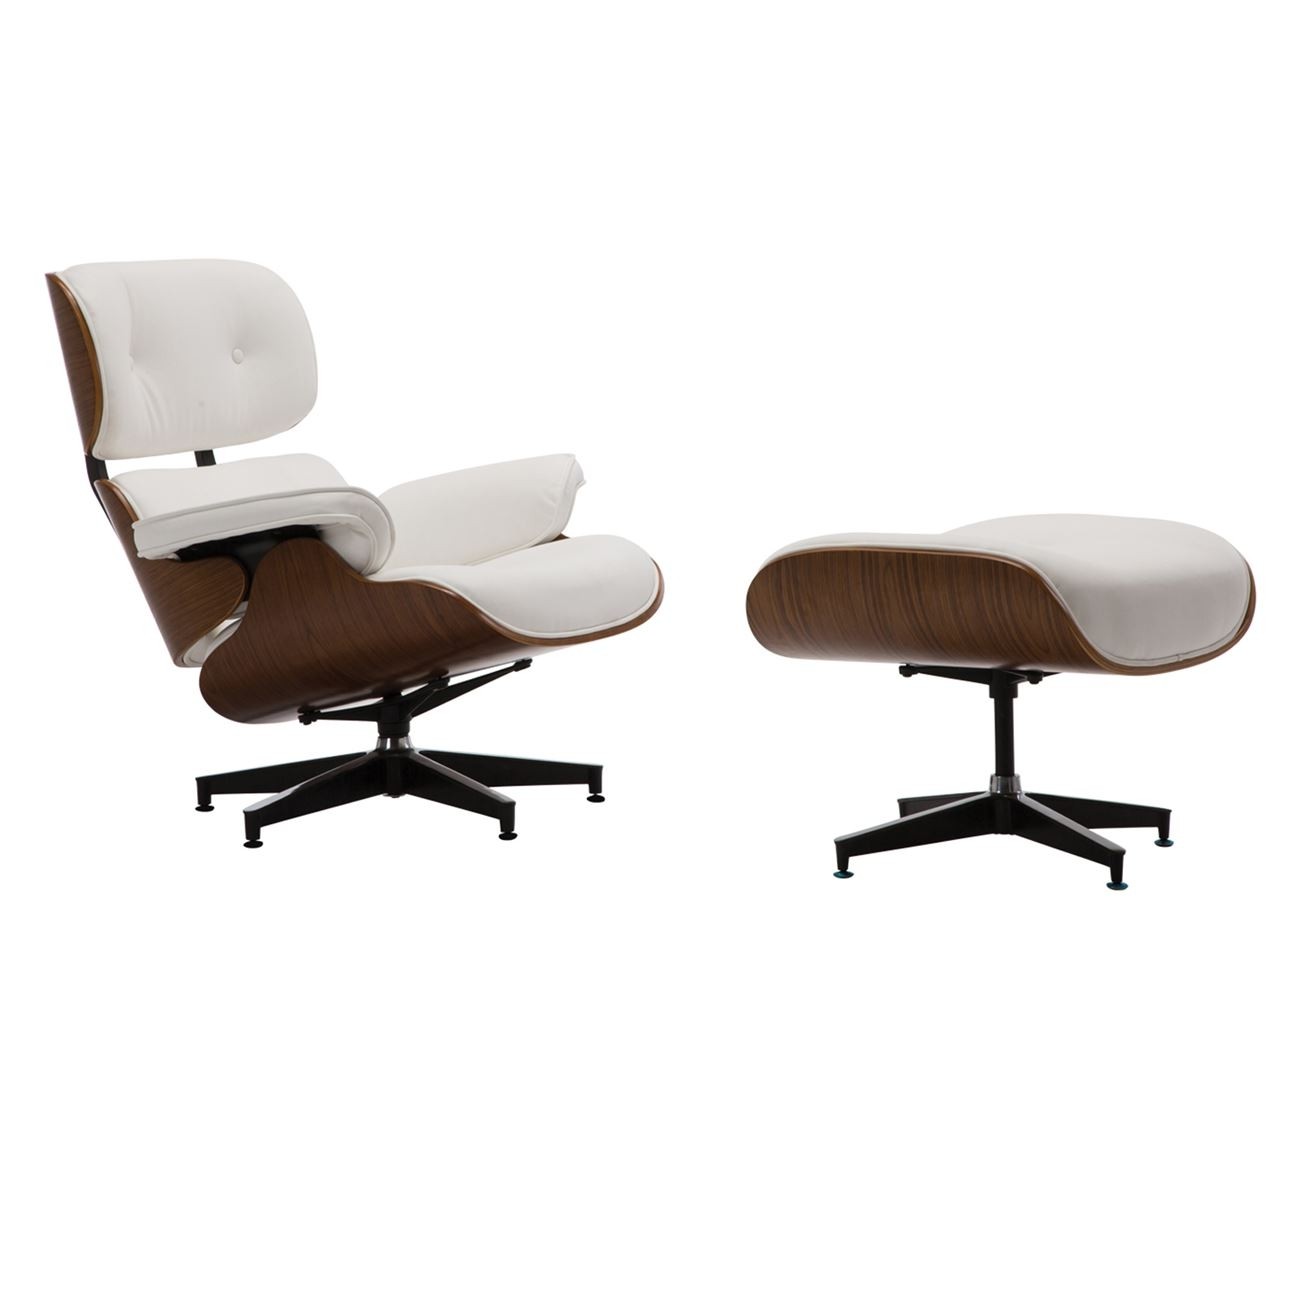 Ρέπλικα της διάσημης πολυθρόνας Eames Lounge Chair White